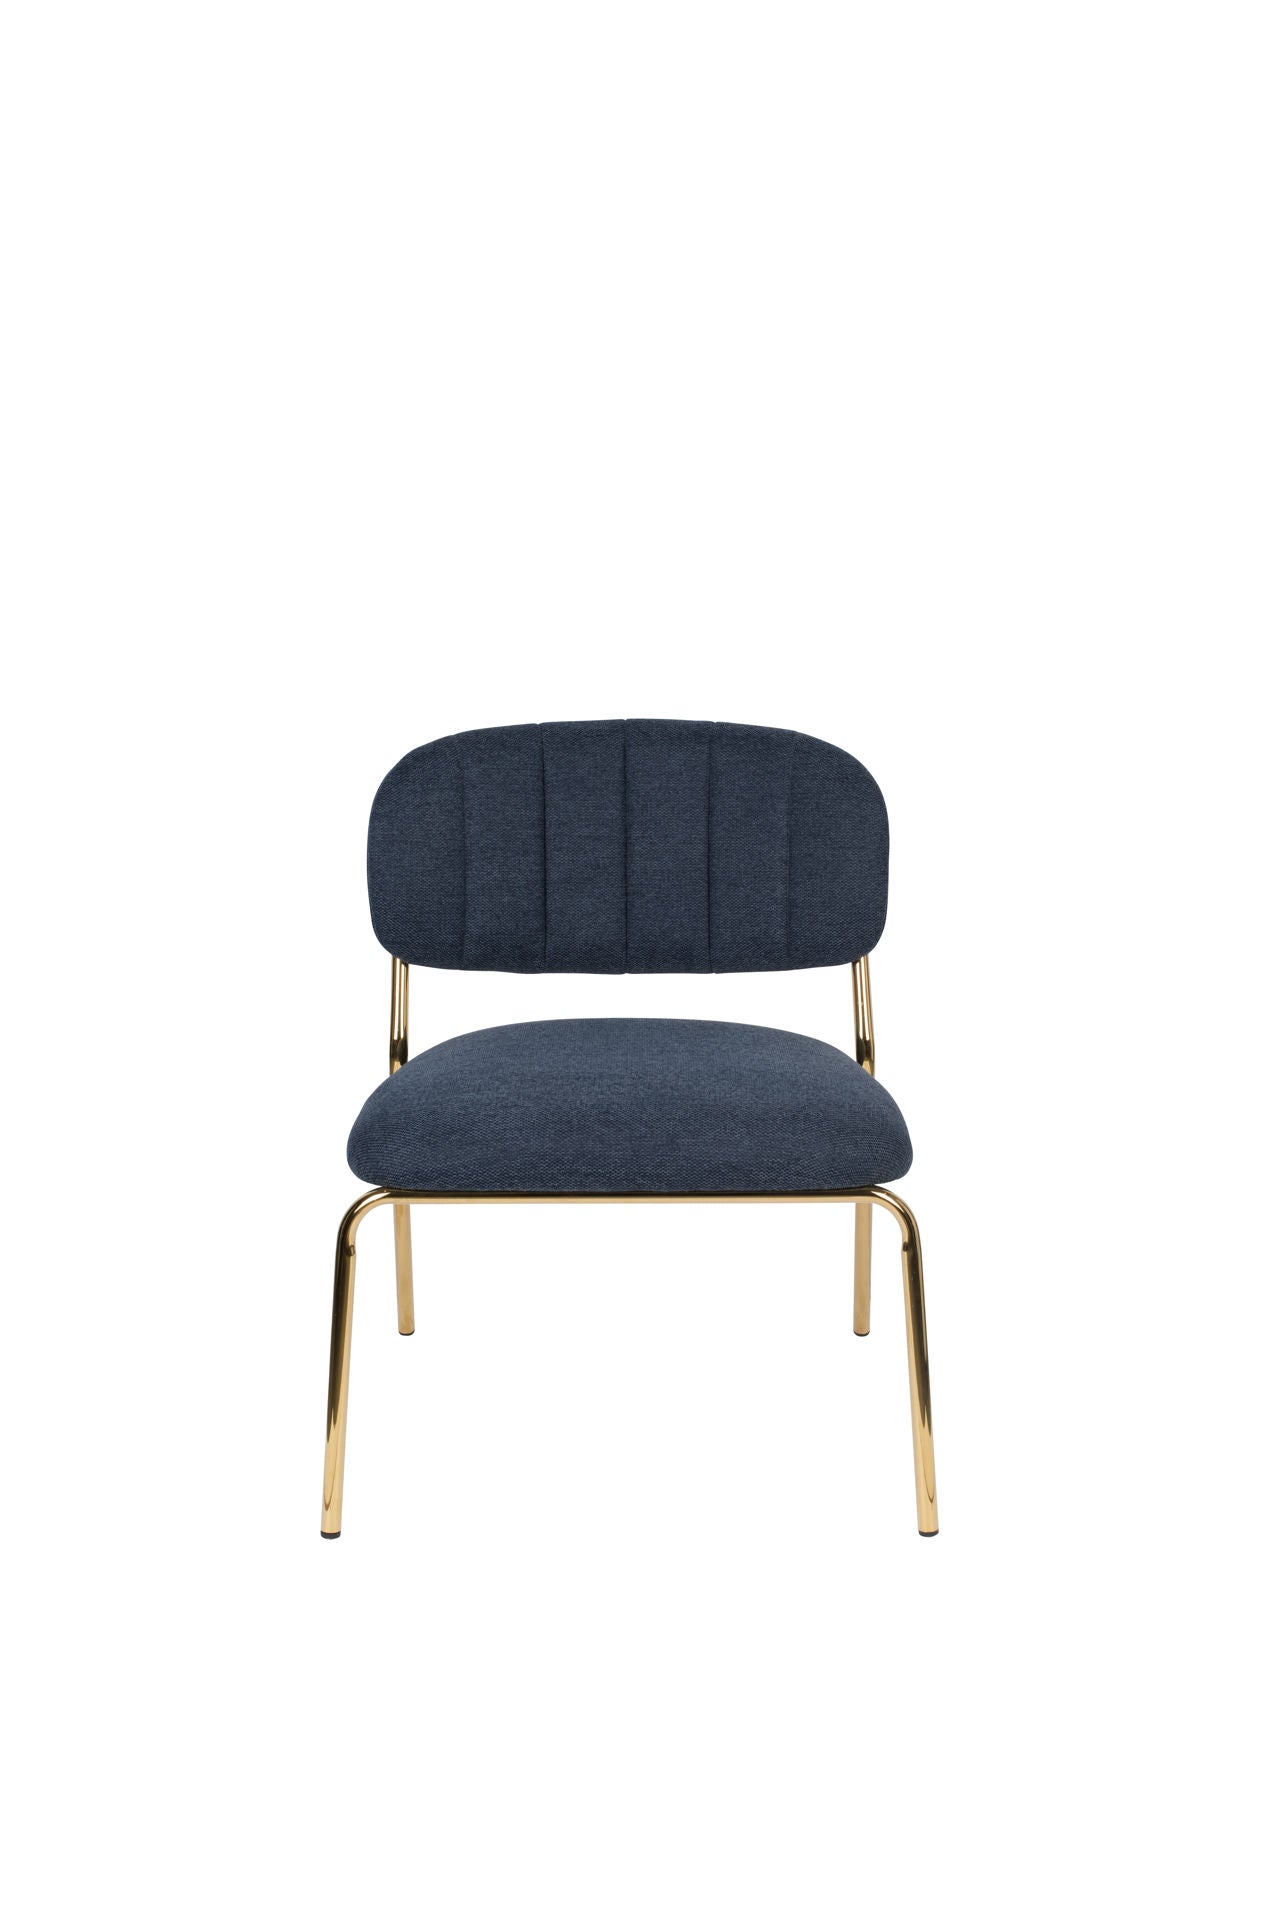 Nancy's Kalaoa Lounge Chair - Industriel - Bleu foncé - Polyester, Contreplaqué, Acier - 60 cm x 56 cm x 68 cm